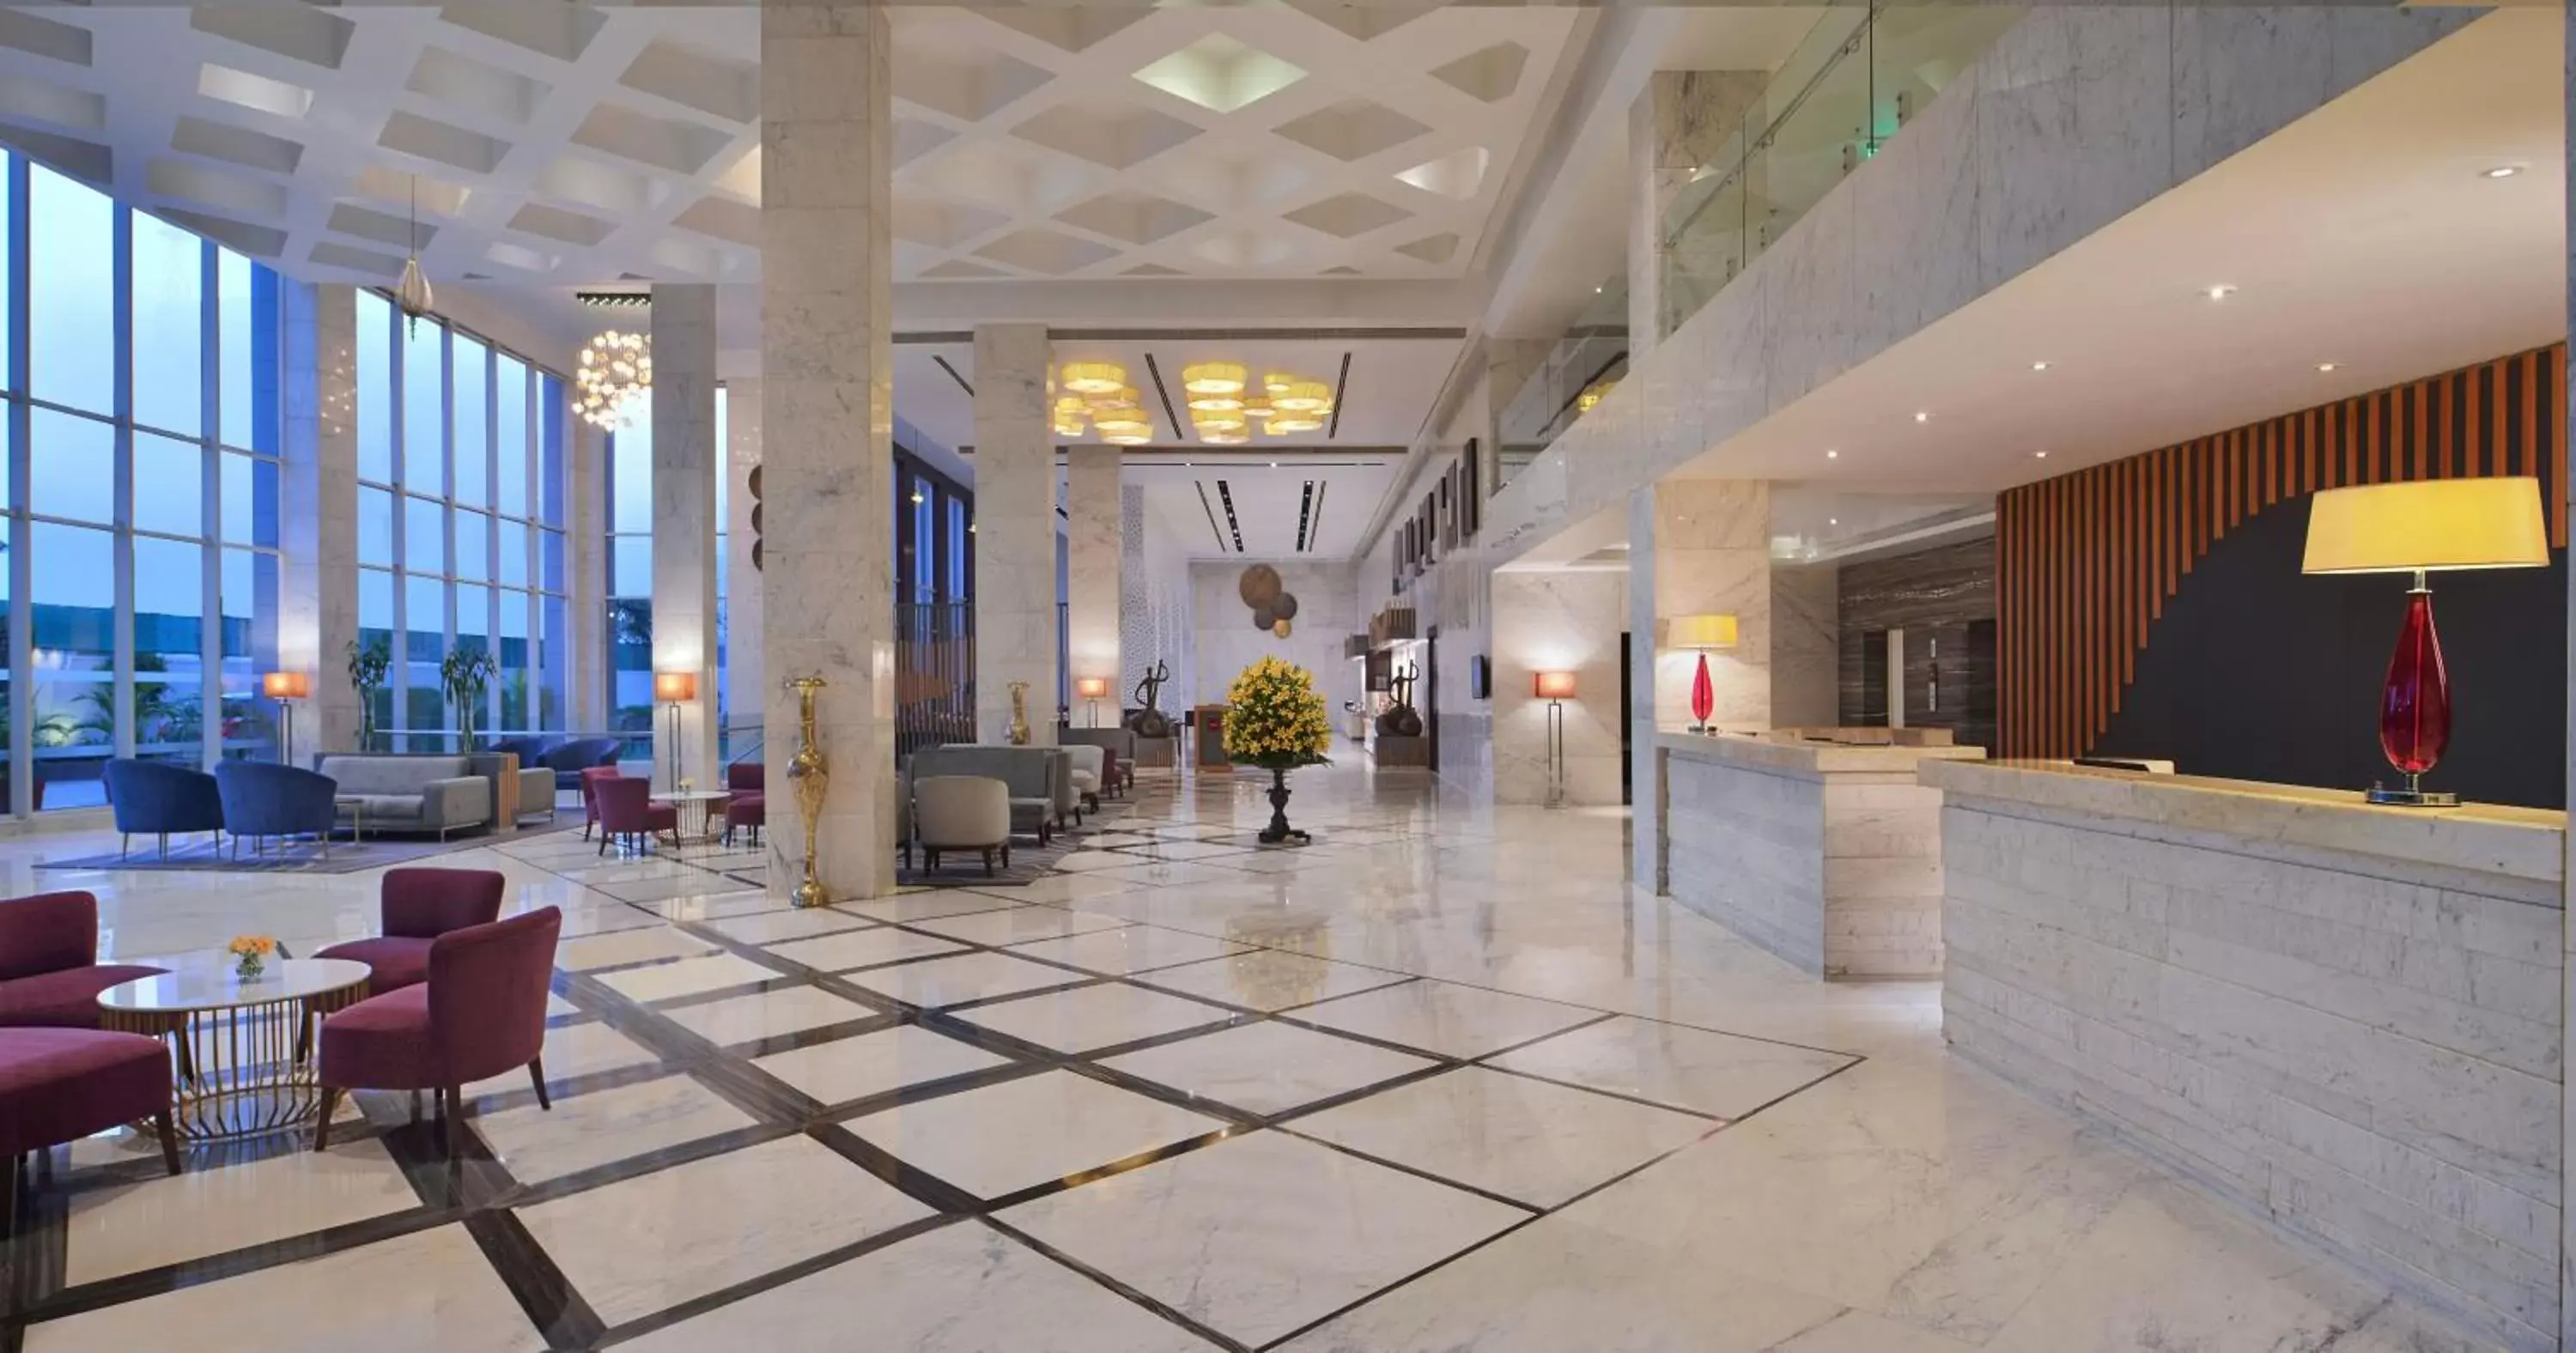 Lobby or reception, Lobby/Reception in Radisson Hotel Agra